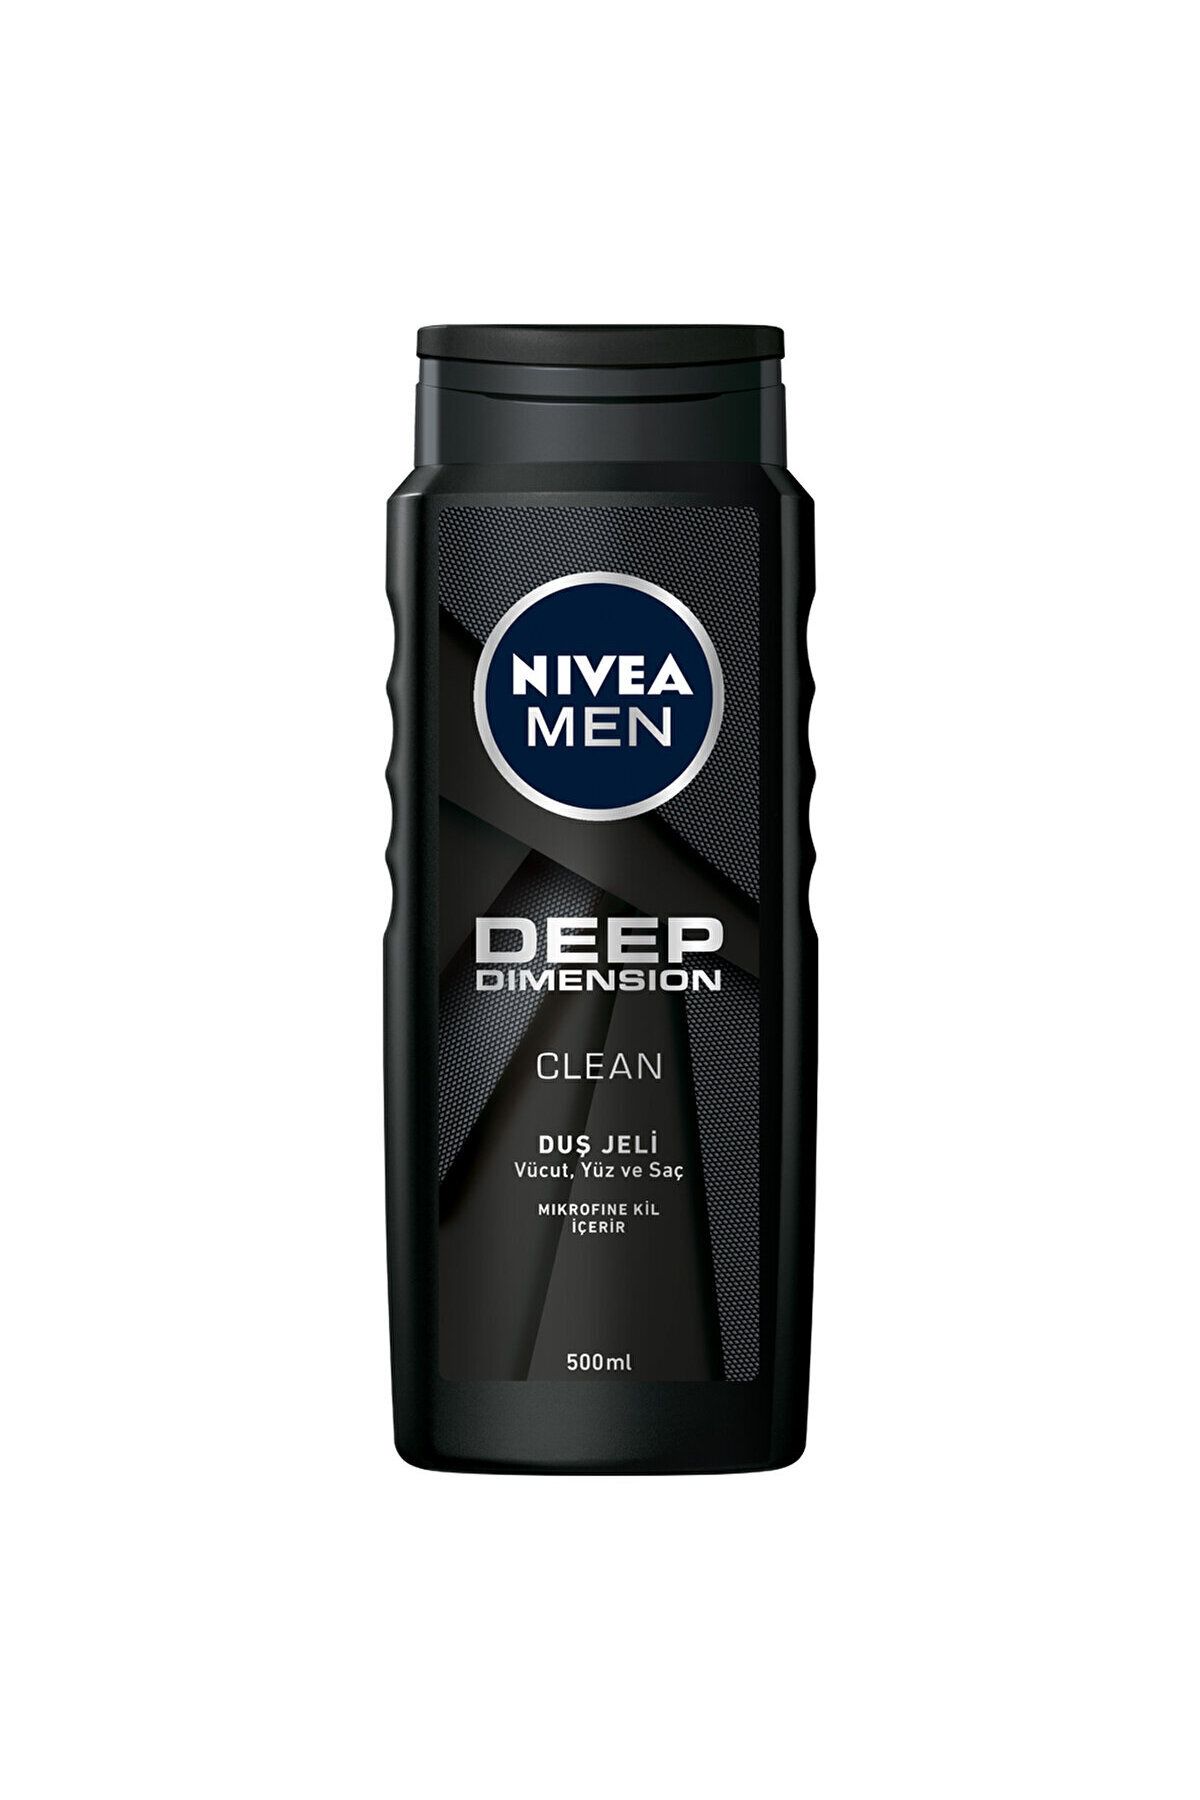 NIVEA Men Deep Dimension Men's Shower Gel 500 ml DKÜRN679